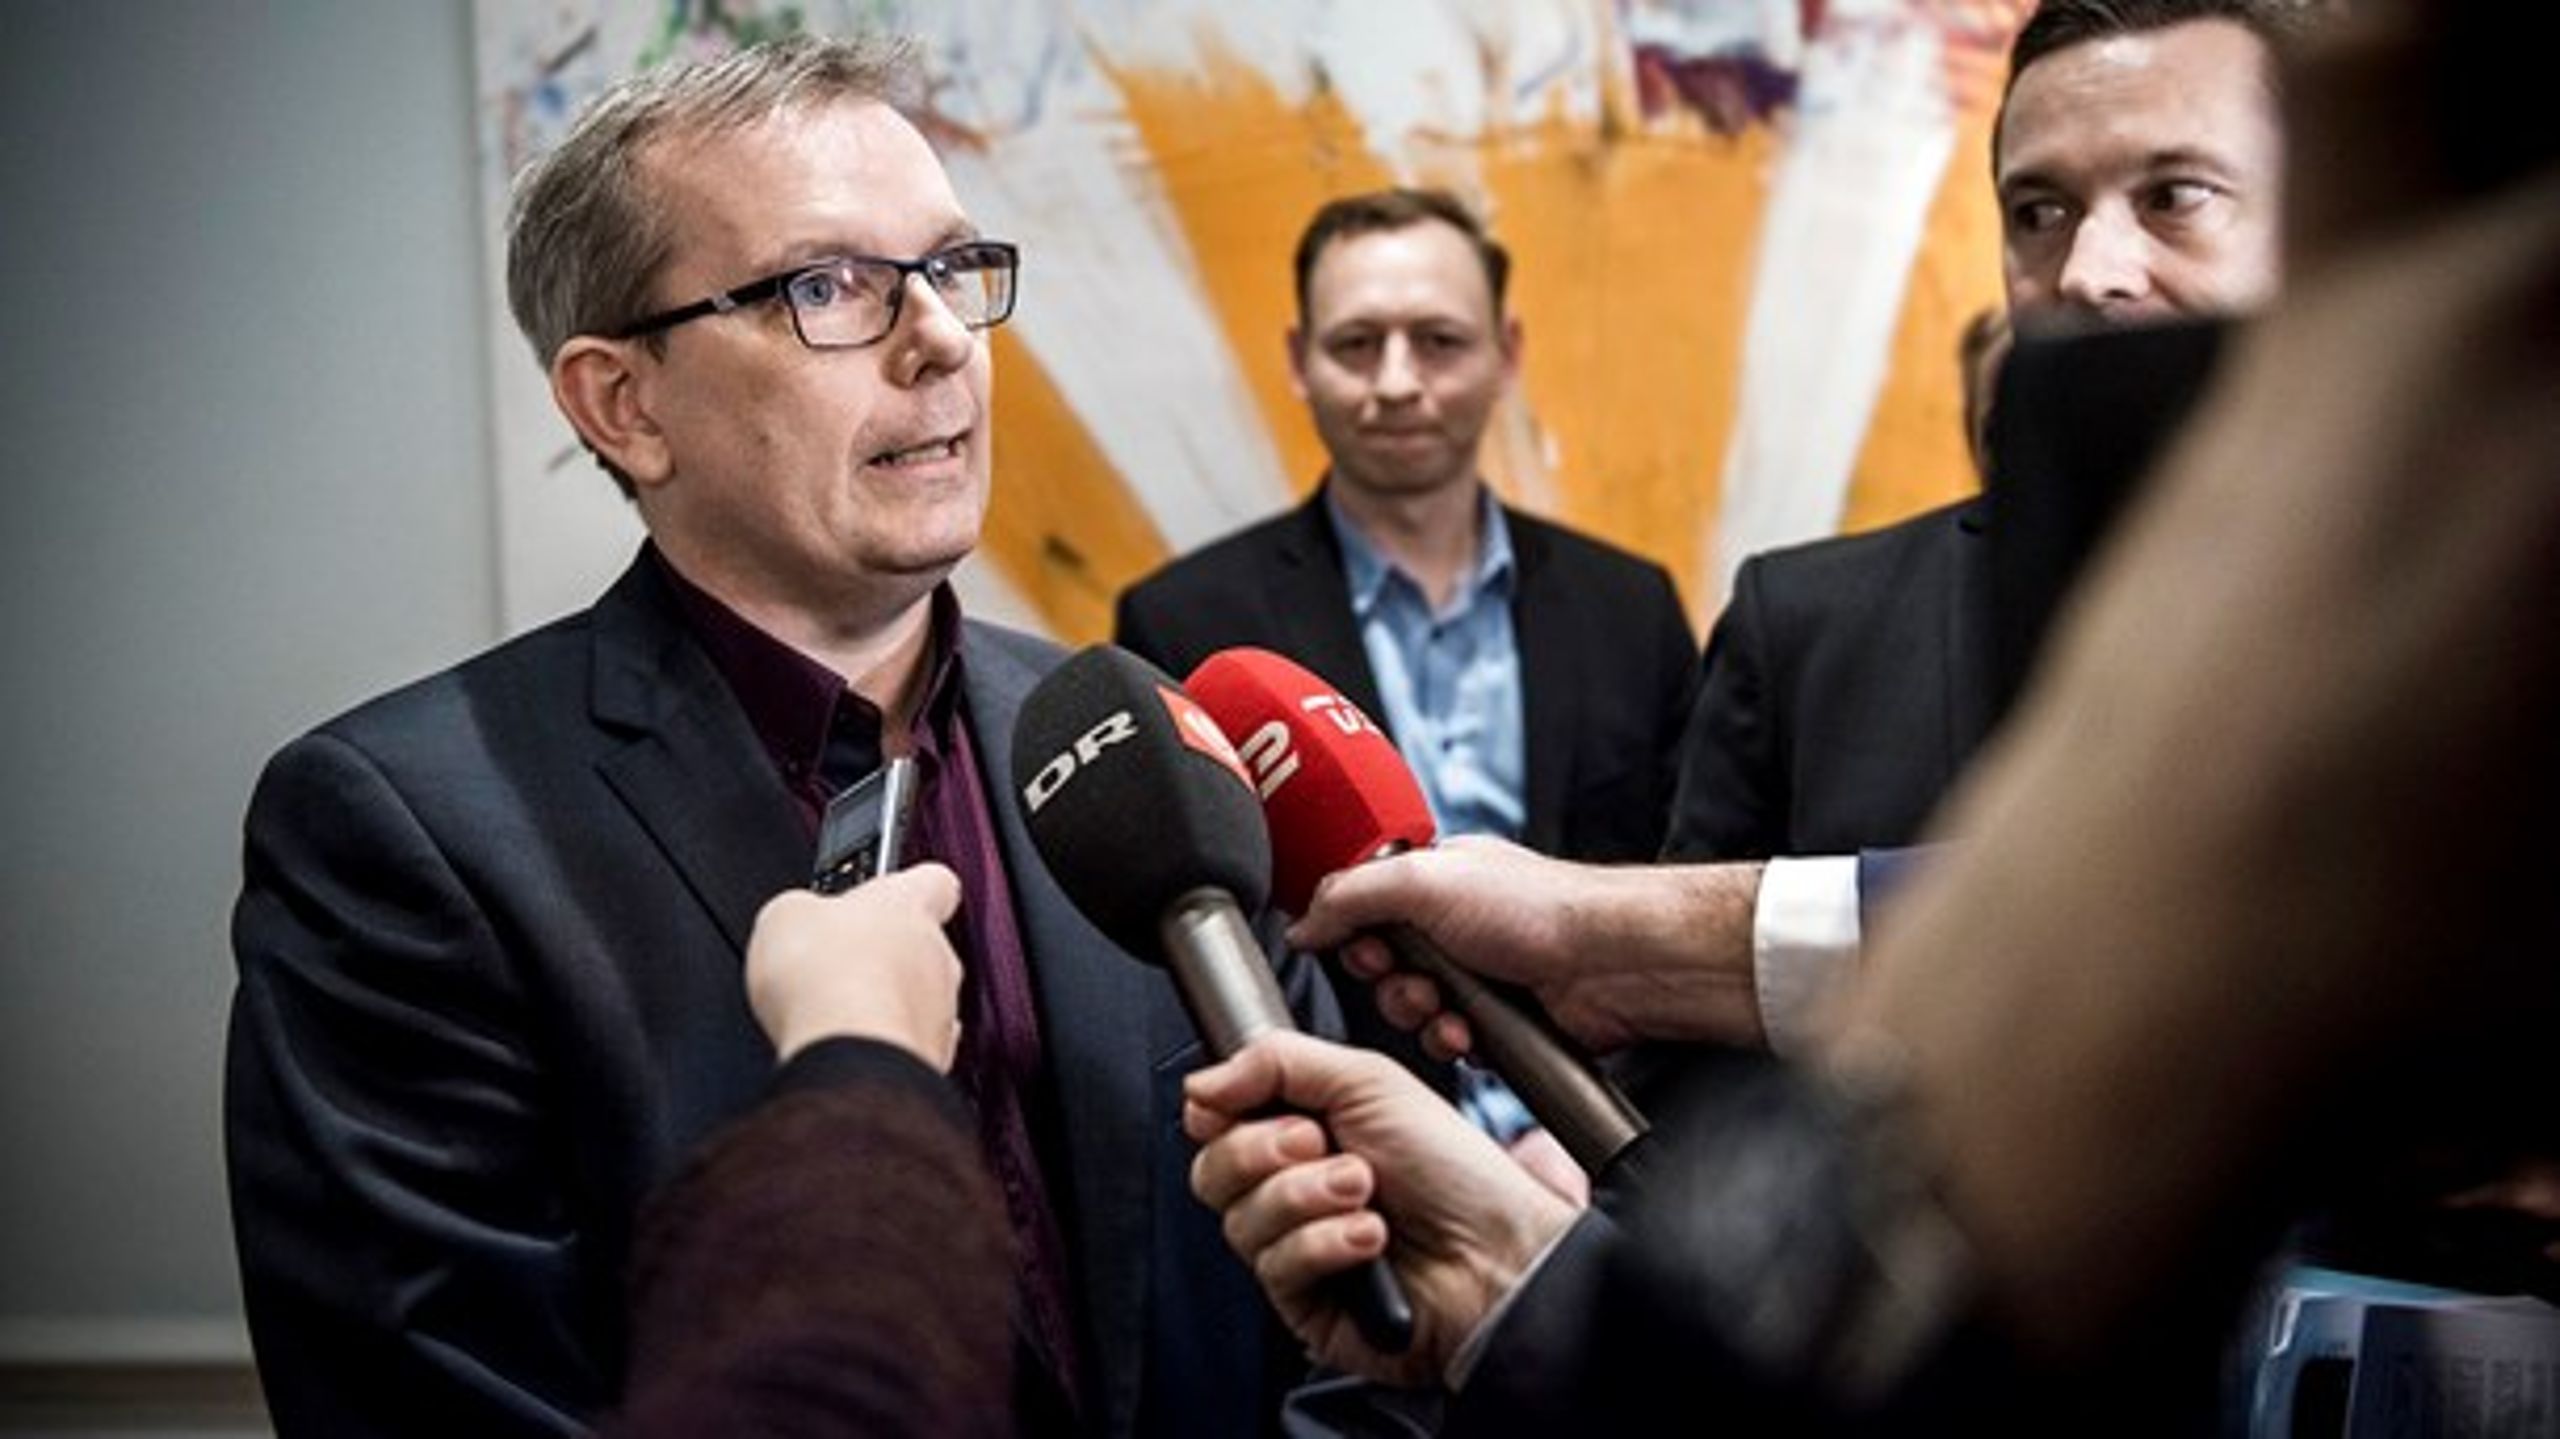 Både Hans Kristian Skibby fra Dansk Folkeparti (<i>til venstre</i>) og socialdemokraten Thomas Jensen (<i>kan lige skimtes til højre</i>) overtager opgaven som transportordfører efter jyden med mange år på posten.&nbsp;